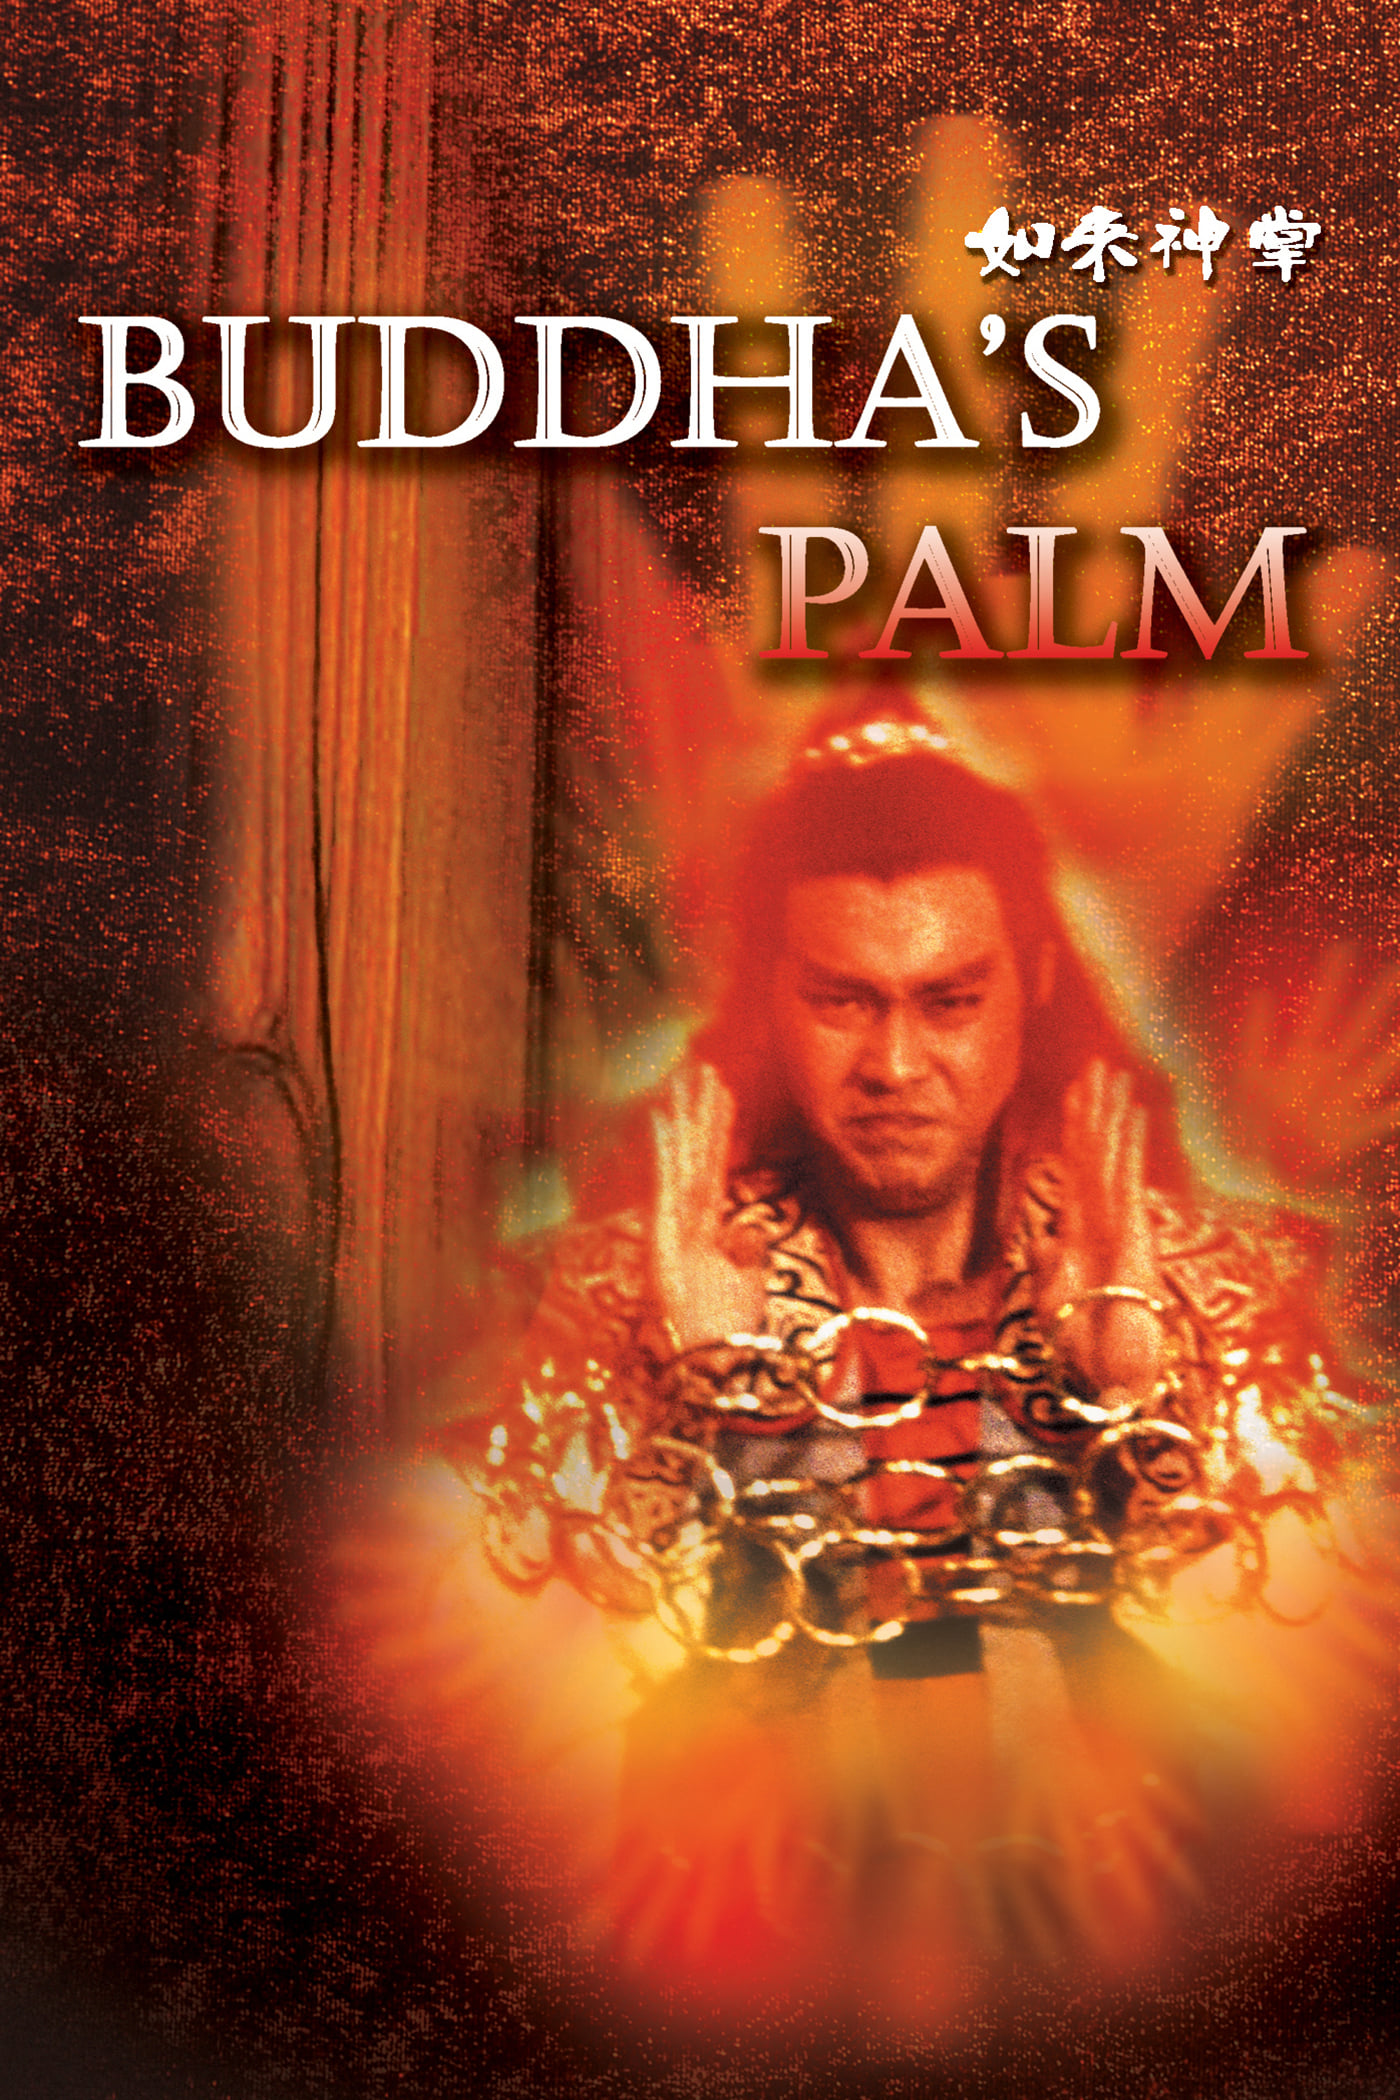 Buddha's Palm (1982)